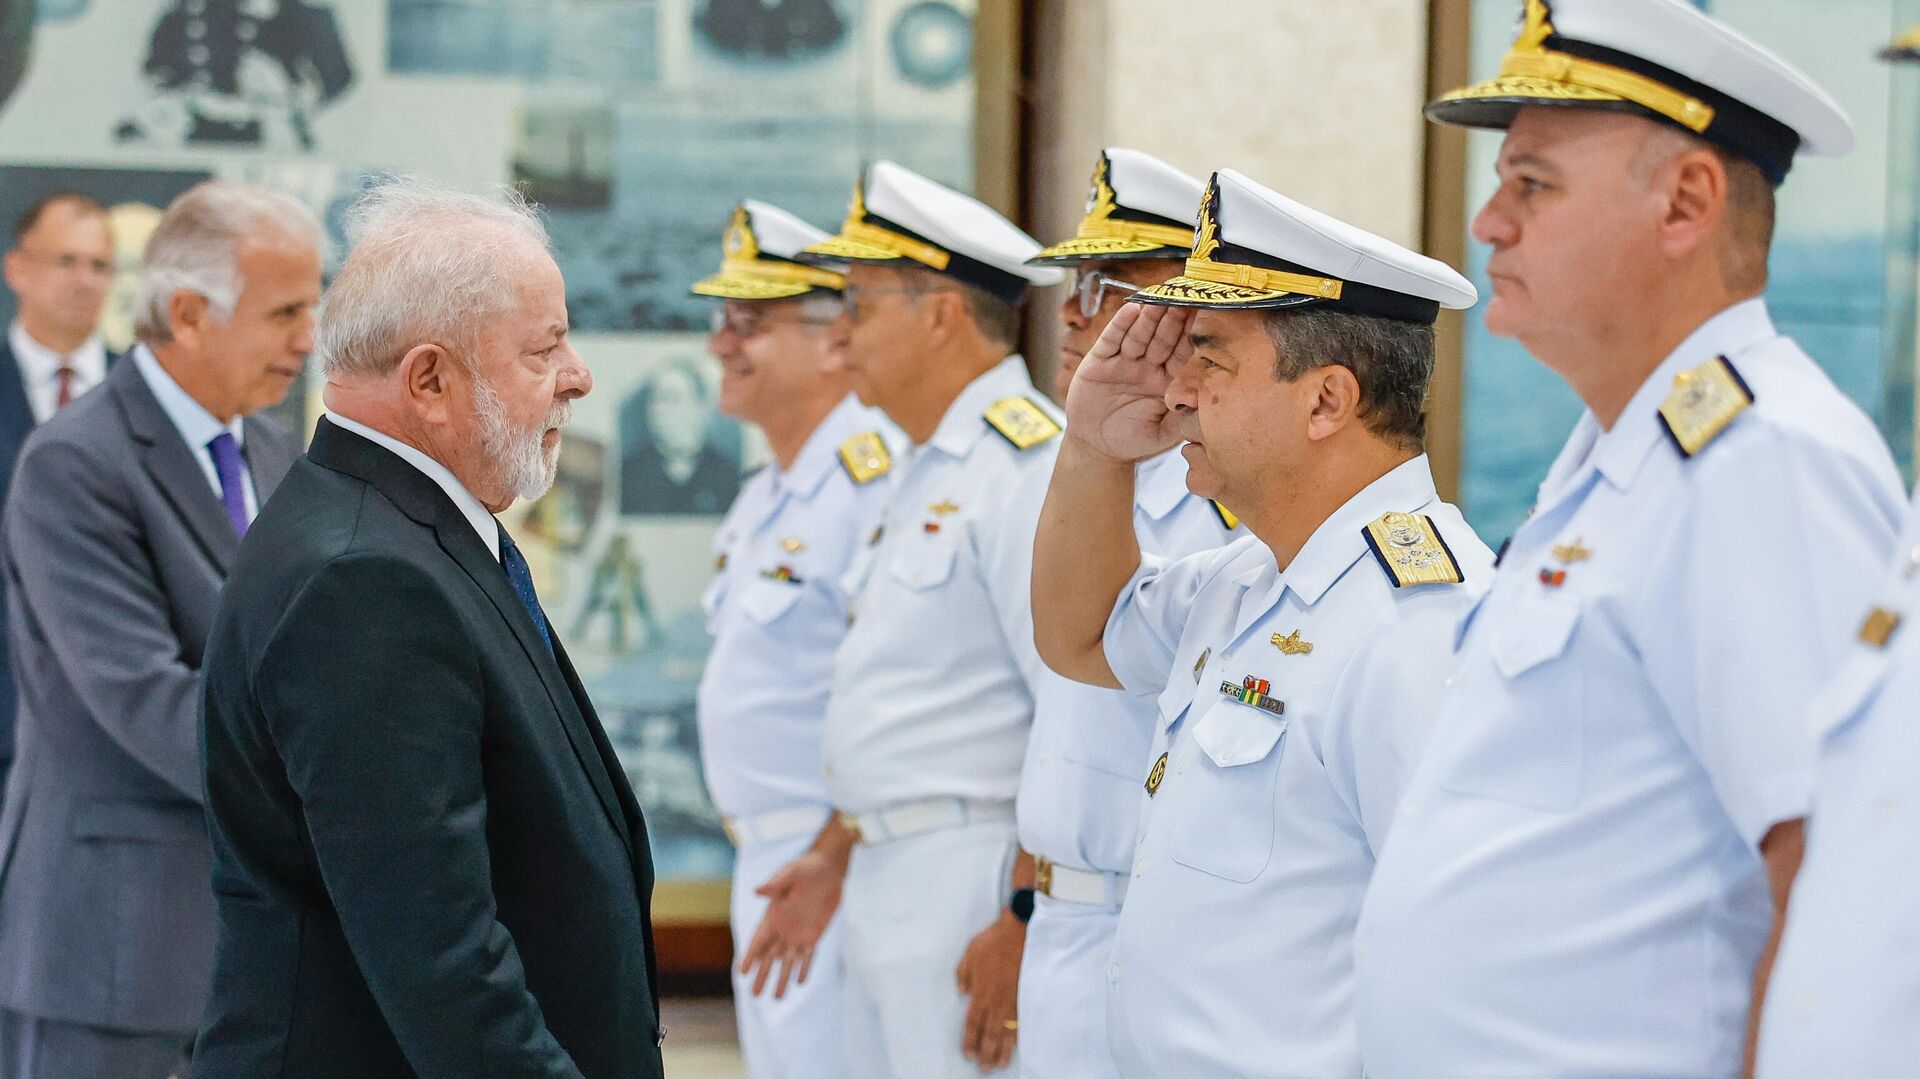 Medalhas da Marinha do Brasil entregues a líderes do governo Lula revoltam  militares, diz mídia - 31.08.2023, Sputnik Brasil